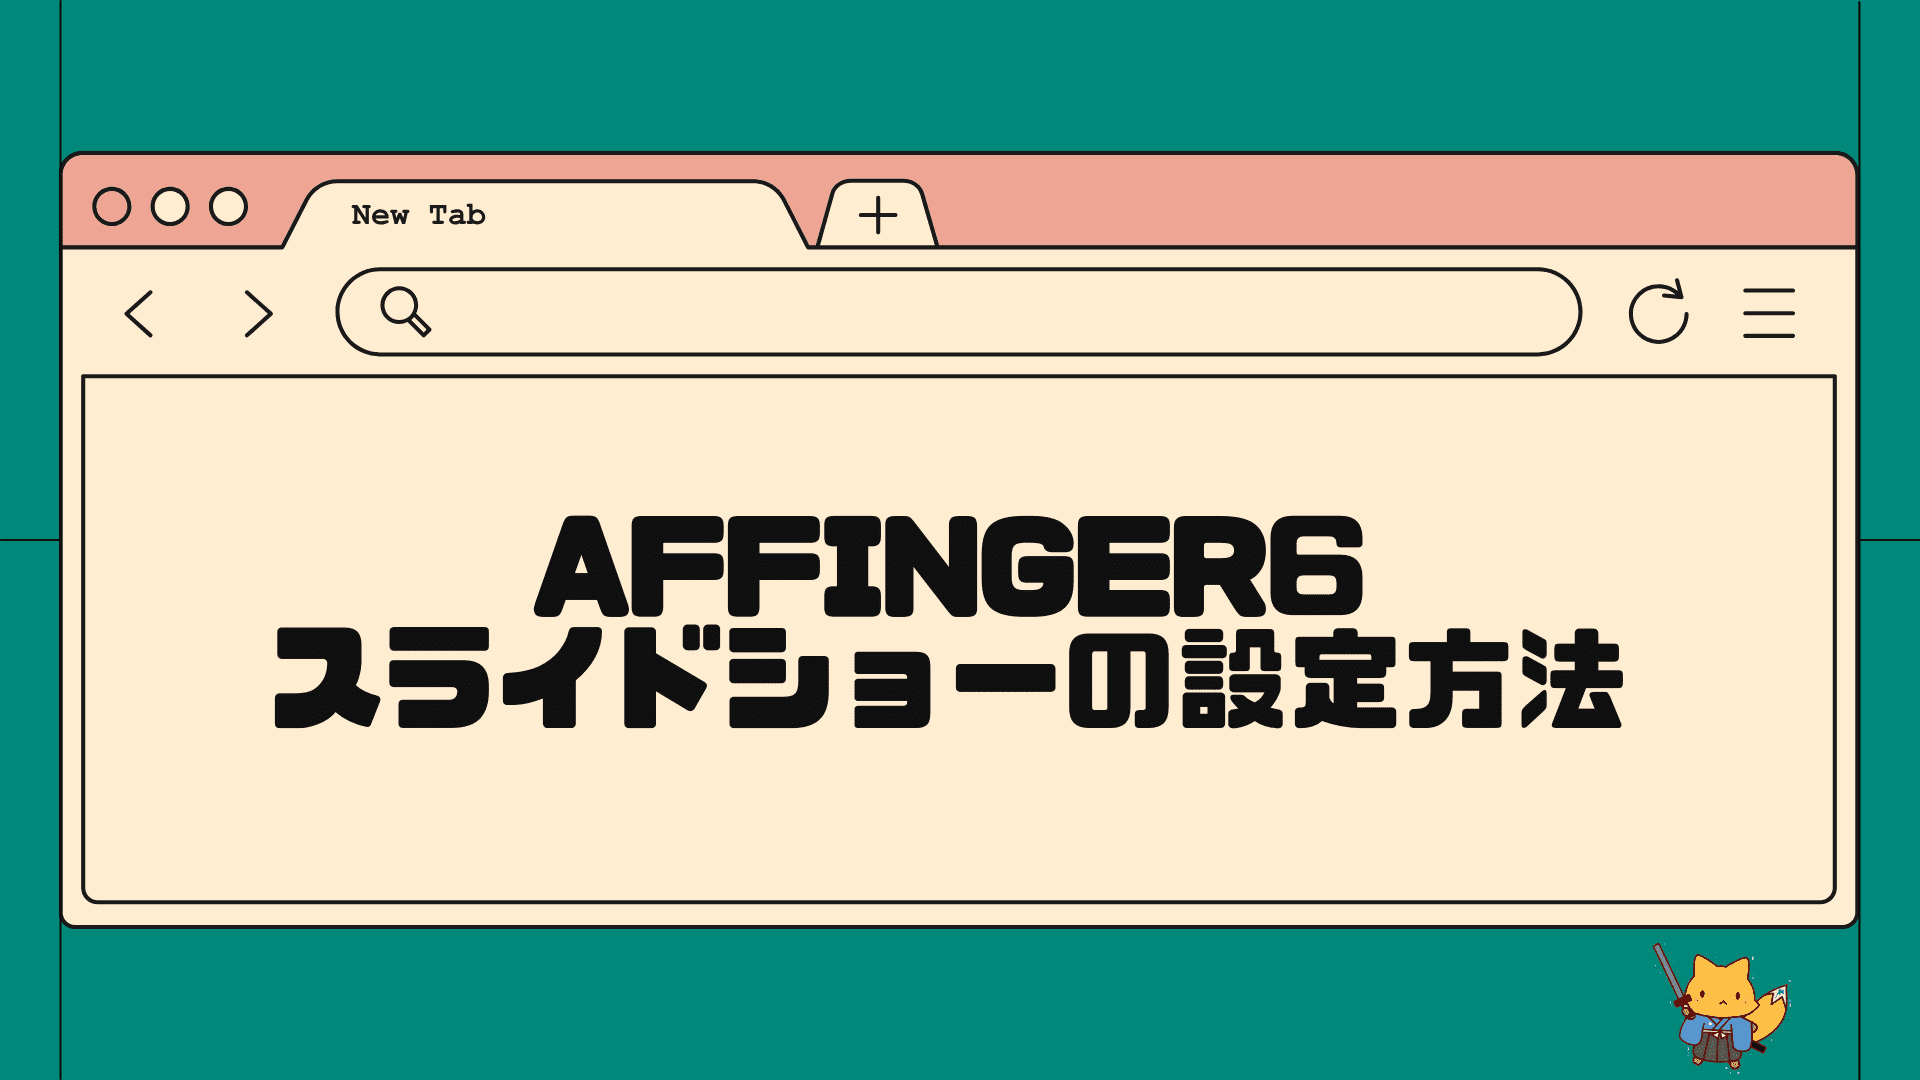 AFFINGER6スライドショー機能の設定方法